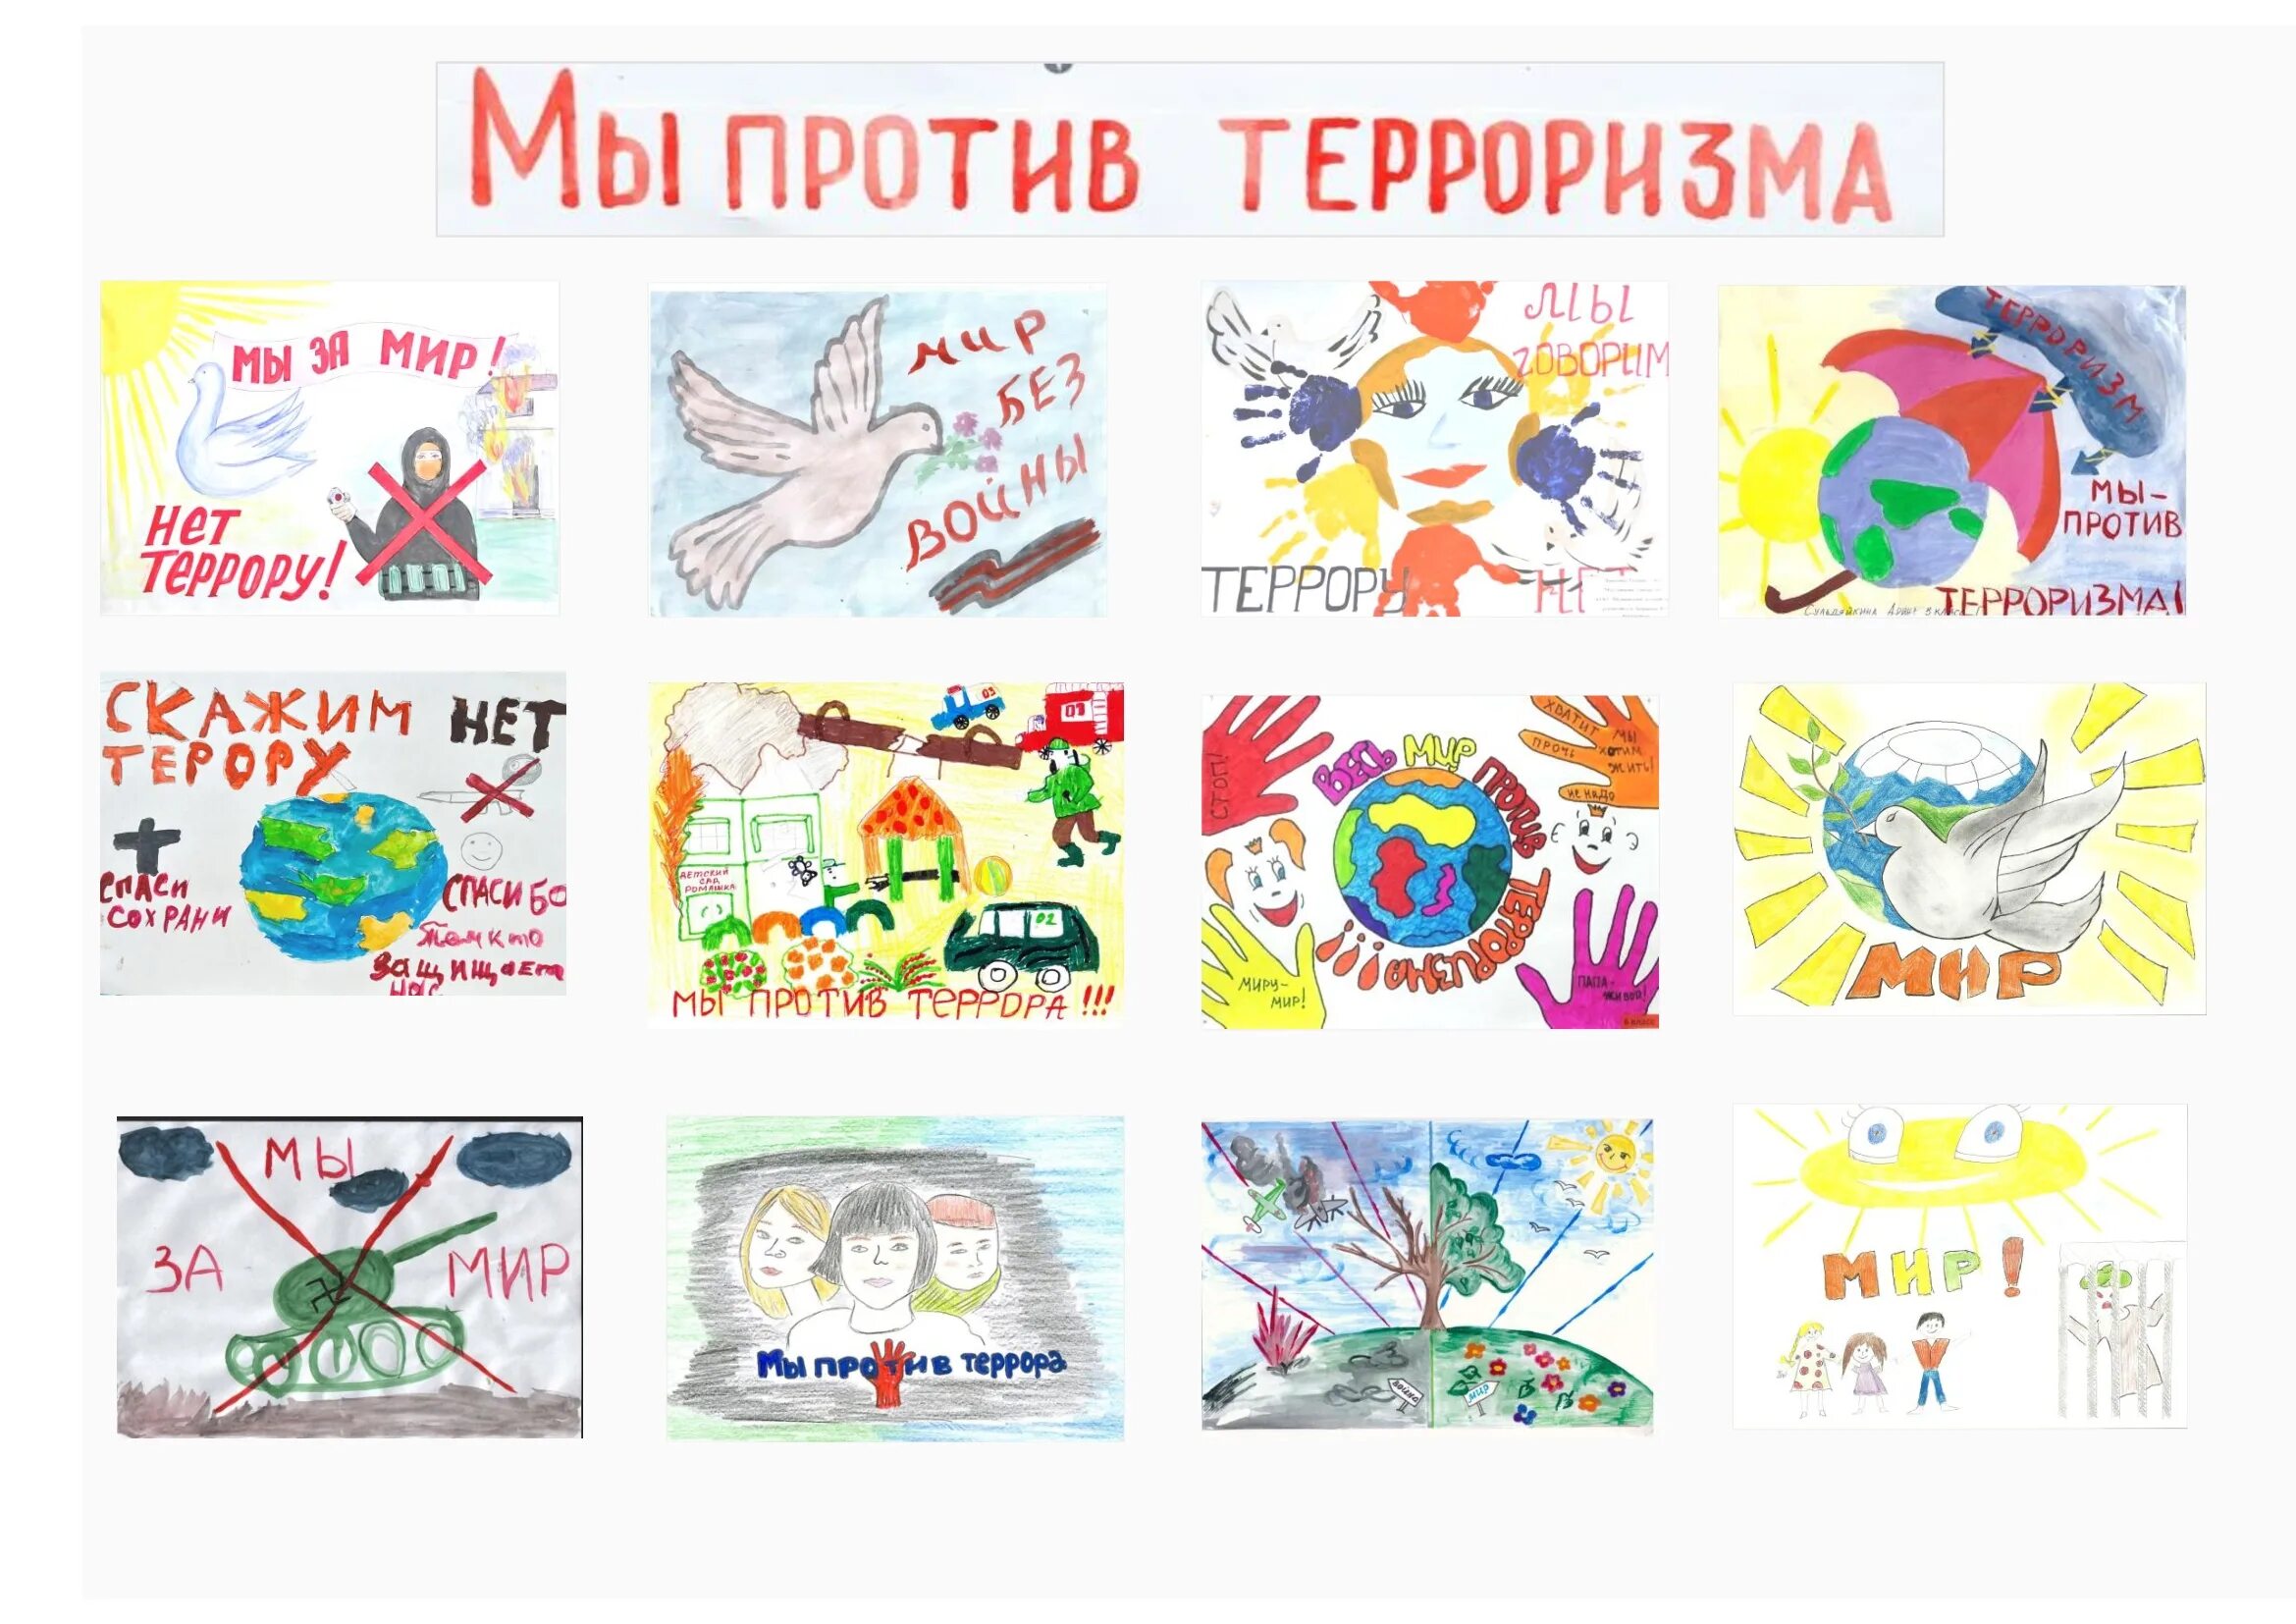 Мир против террора. Мы против террора. Россия против терроризма. Плакат нет терроризму. Фотоколлажи дети против террора.